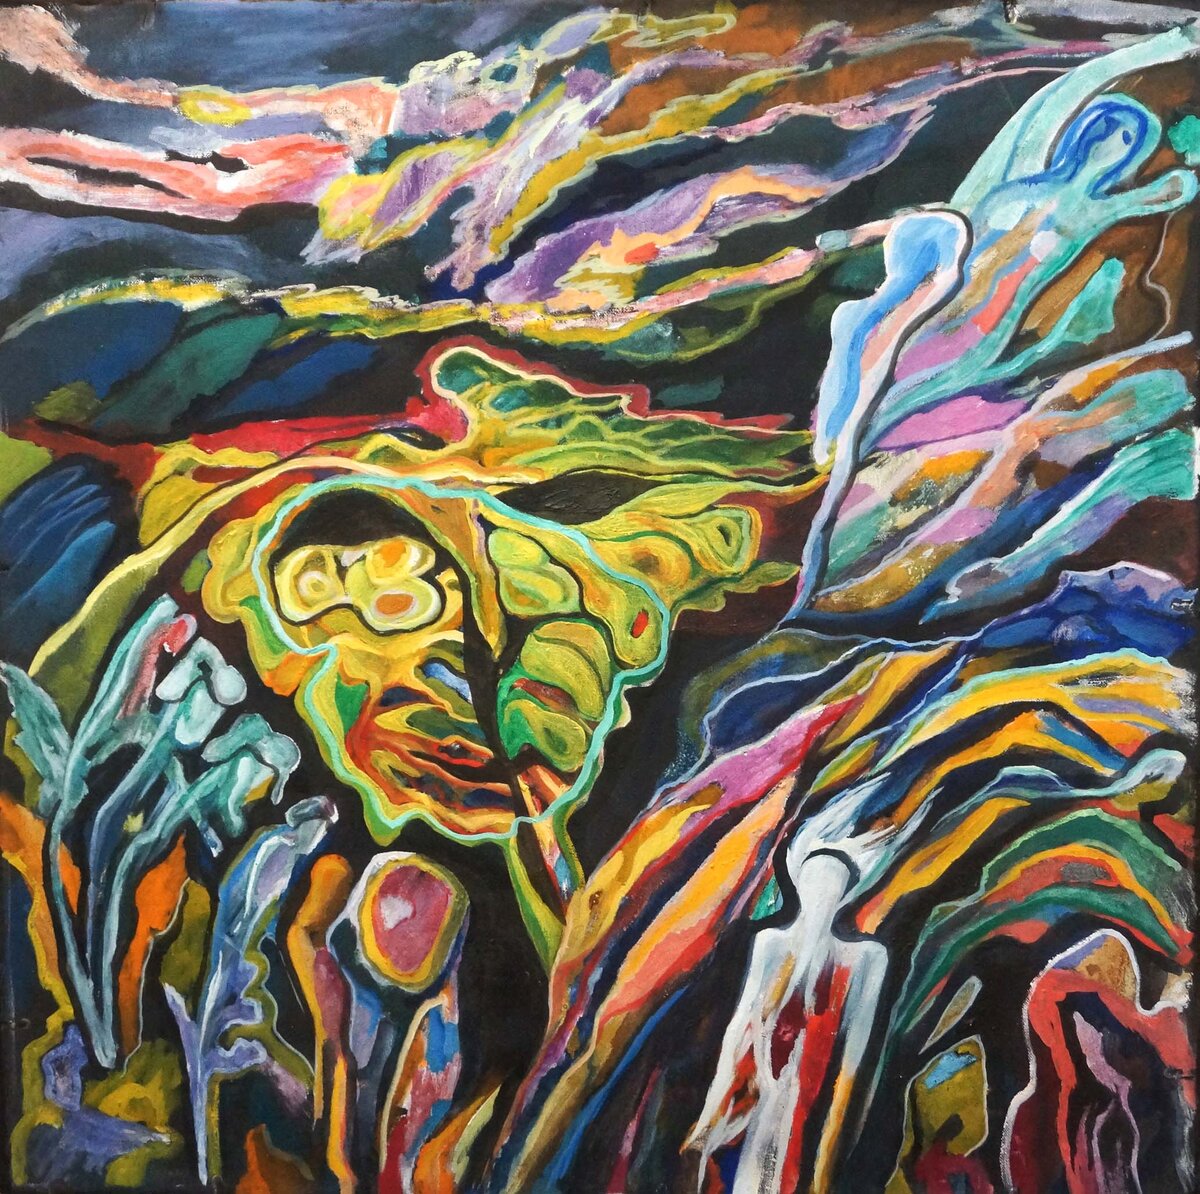 #галерея_у_салавата
# картины на продажу май-23
http://ural-poster.-35